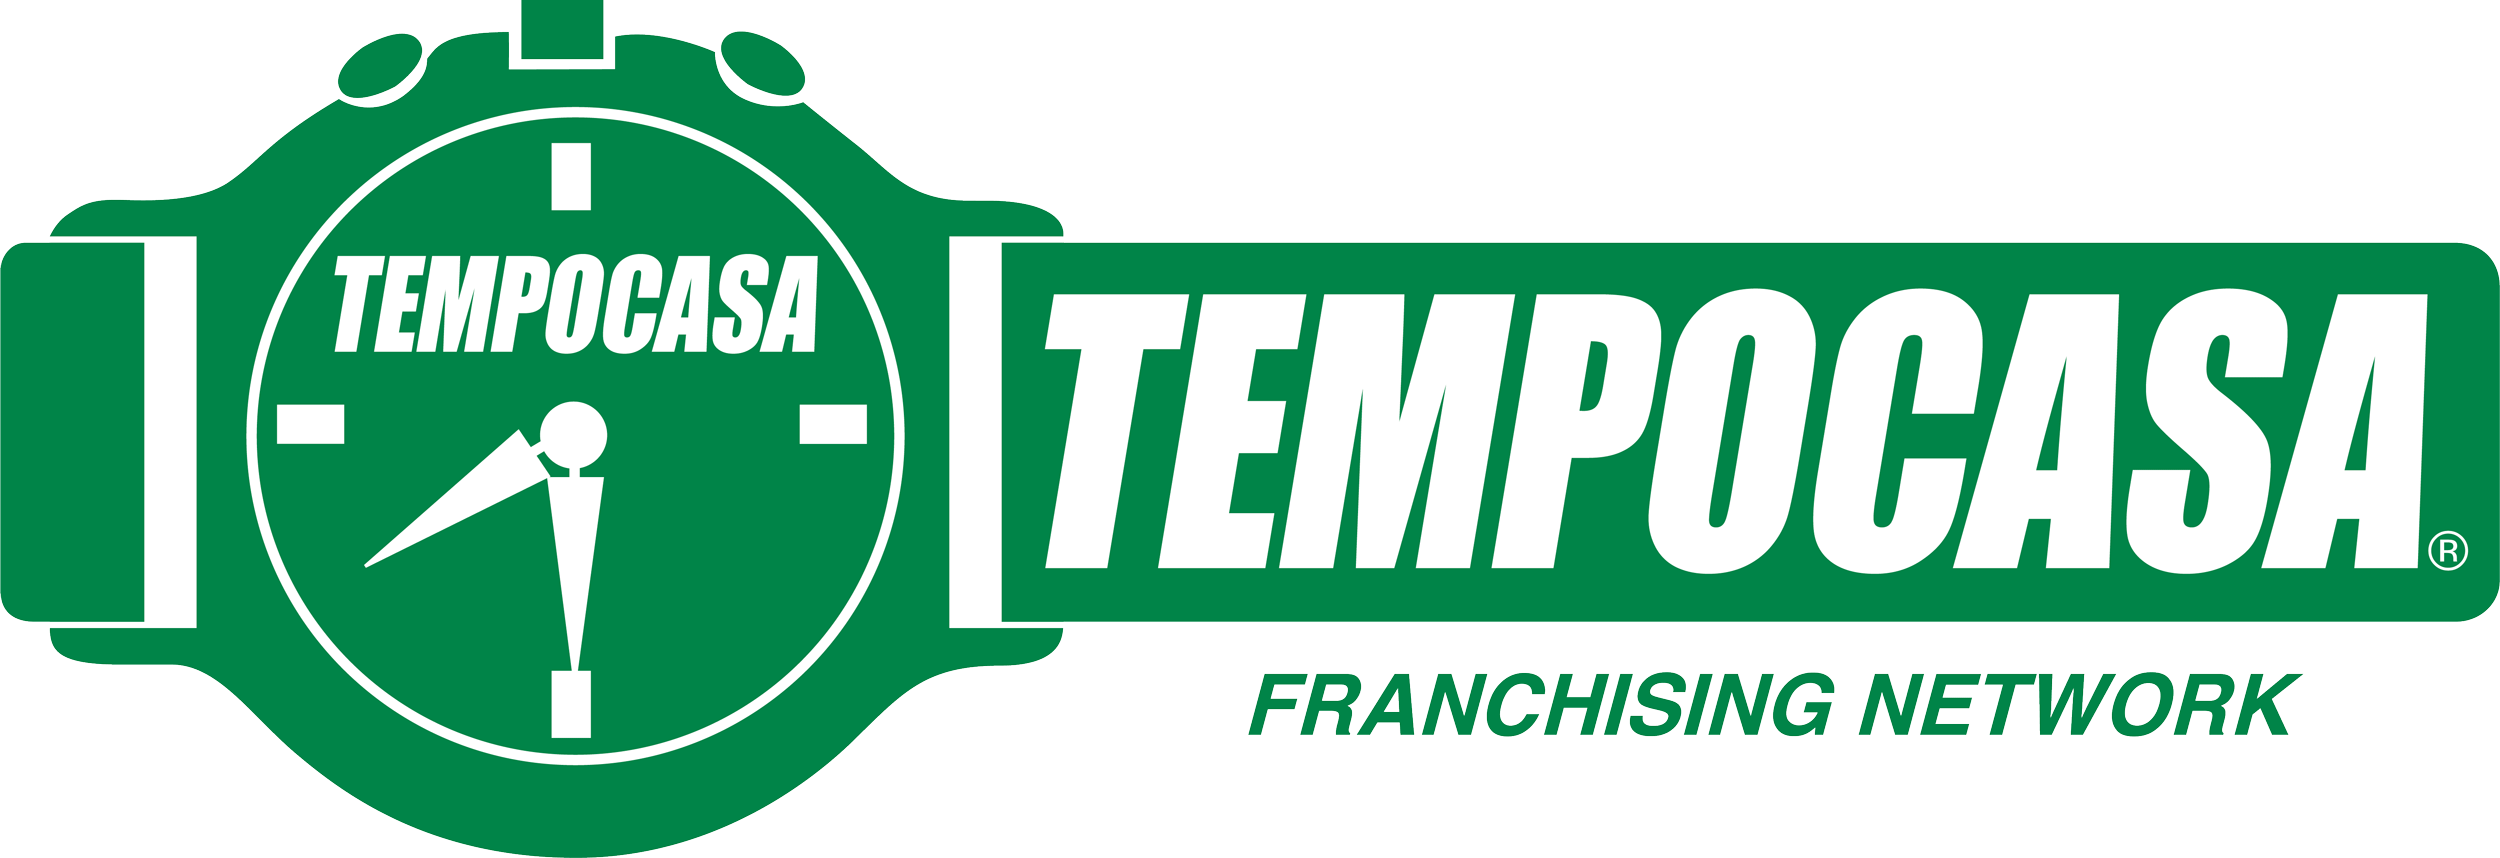 Leinì - Tempocasa